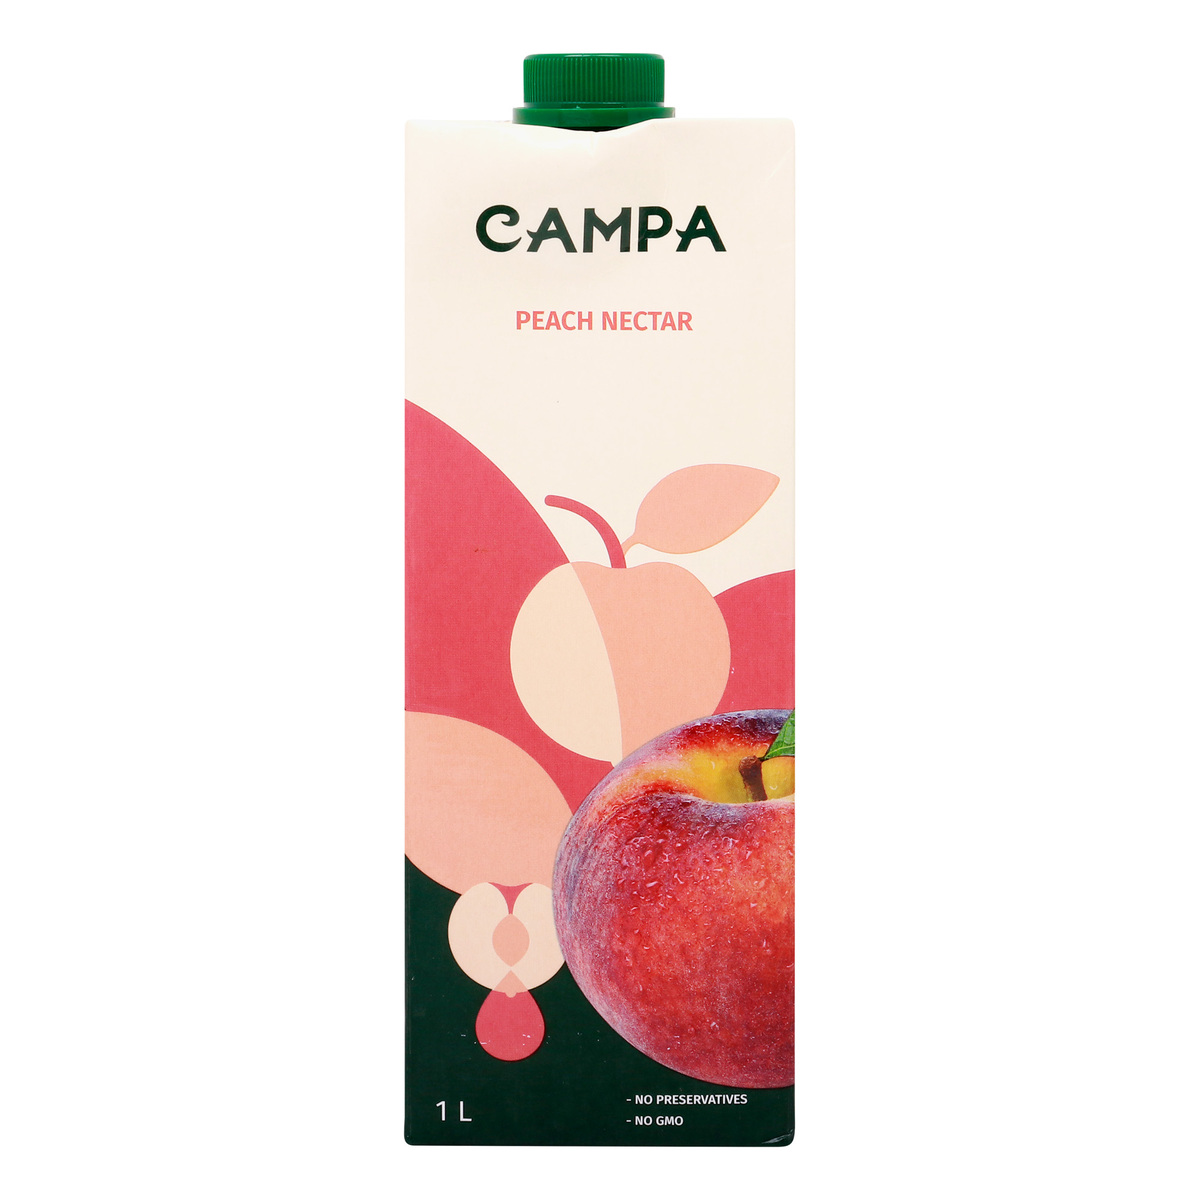 Campa Peach Nectar, 1 Litre